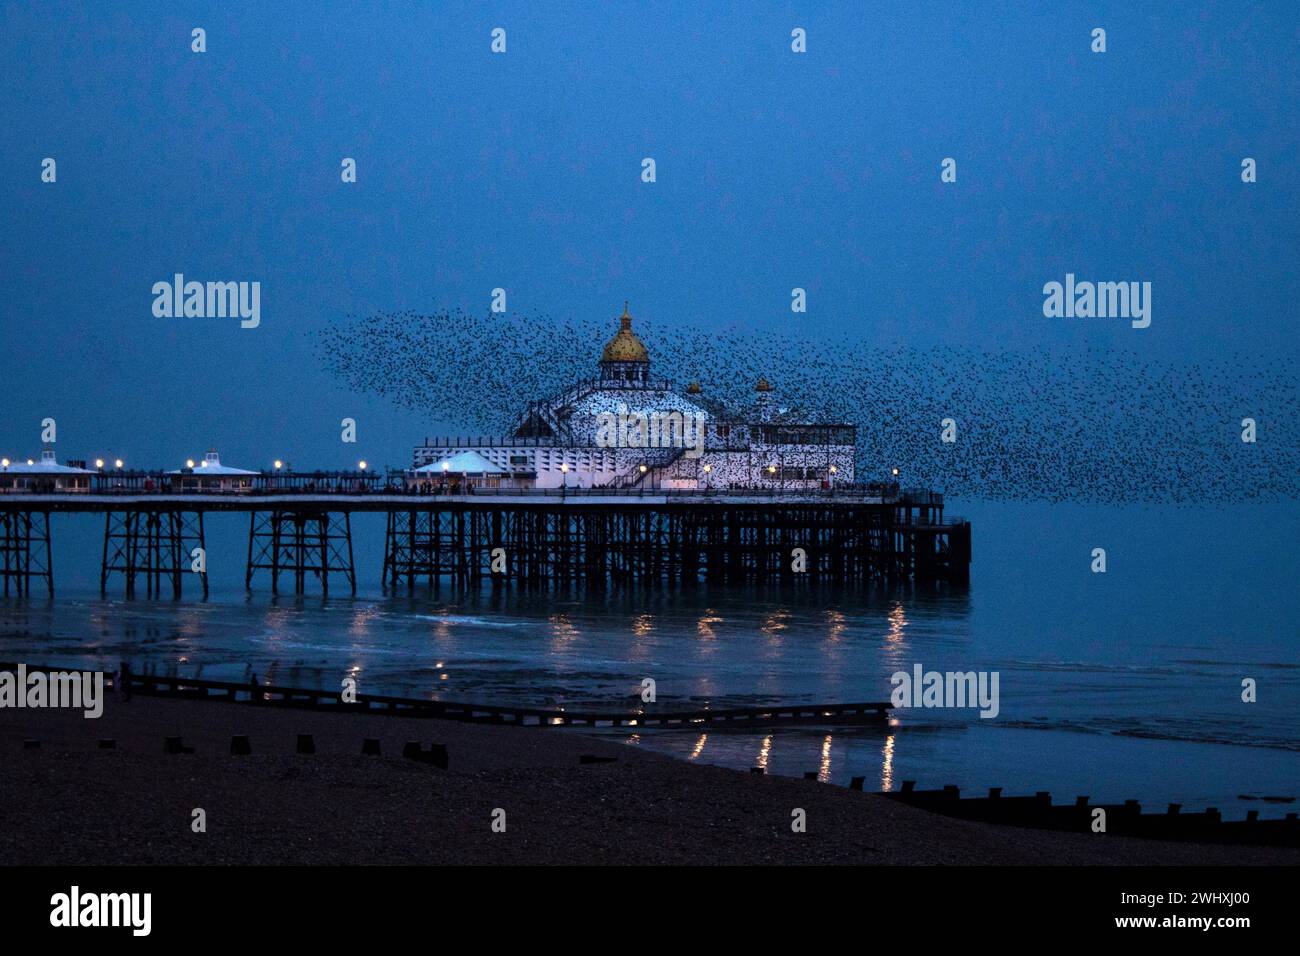 Murmeln von Starlingen in der Abenddämmerung, die über den Eastbourne Pier fliegen, einem Vergnügungspier am Meer in Eastbourne, East Sussex, an der Südküste Englands Stockfoto